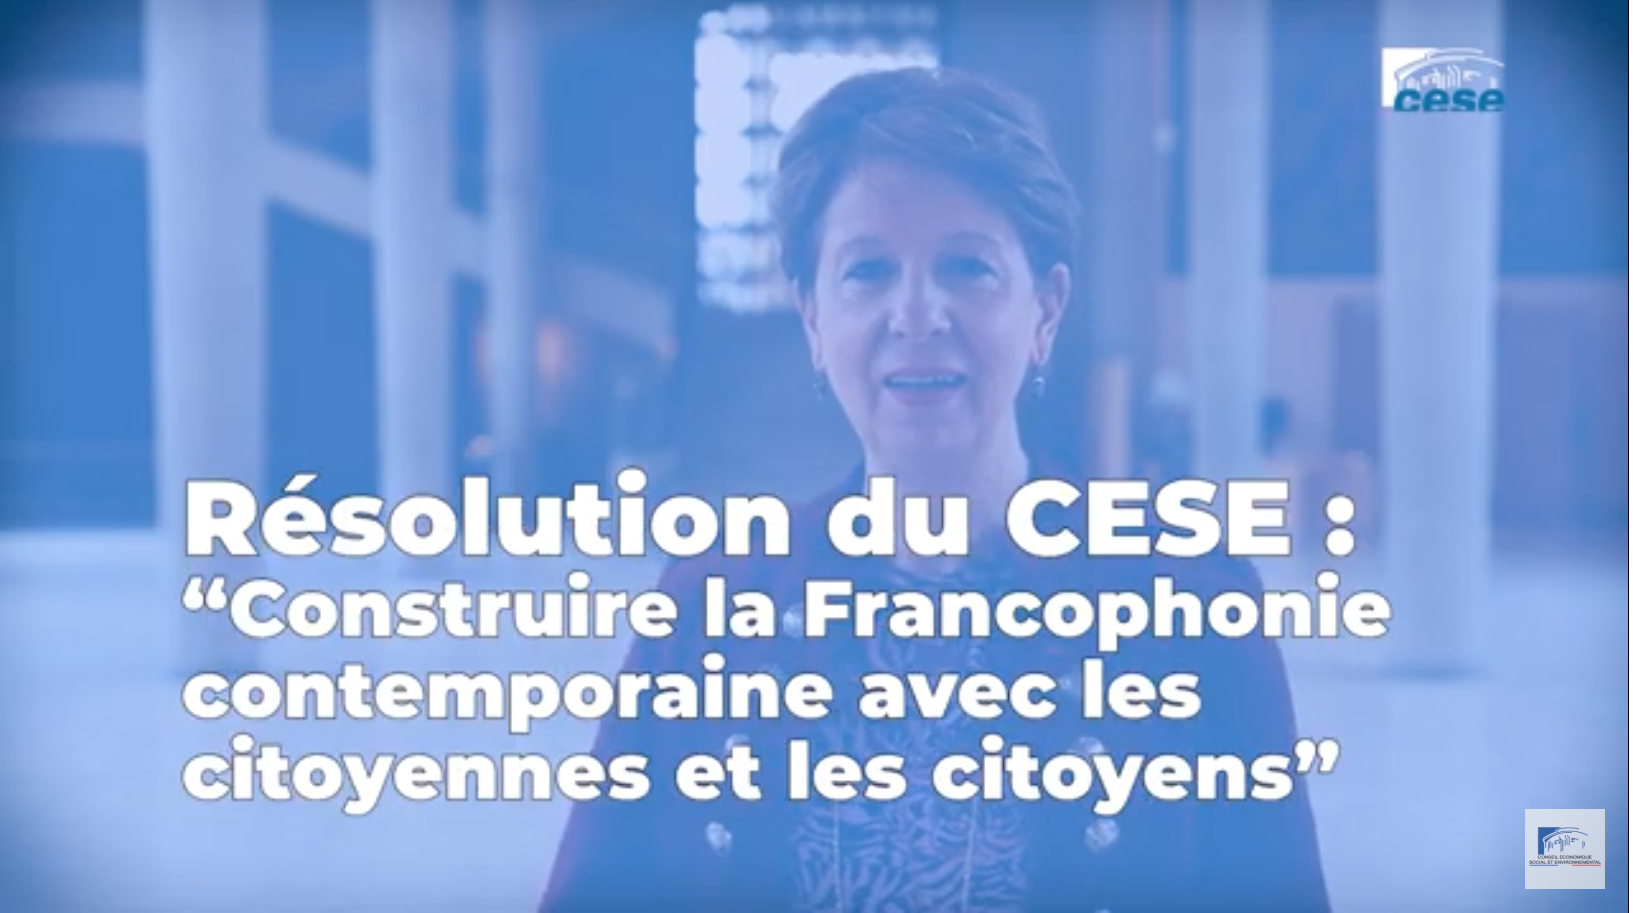 Le CESE adopte la résolution « Construire la Francophonie contemporaine avec les citoyennes et les citoyens »